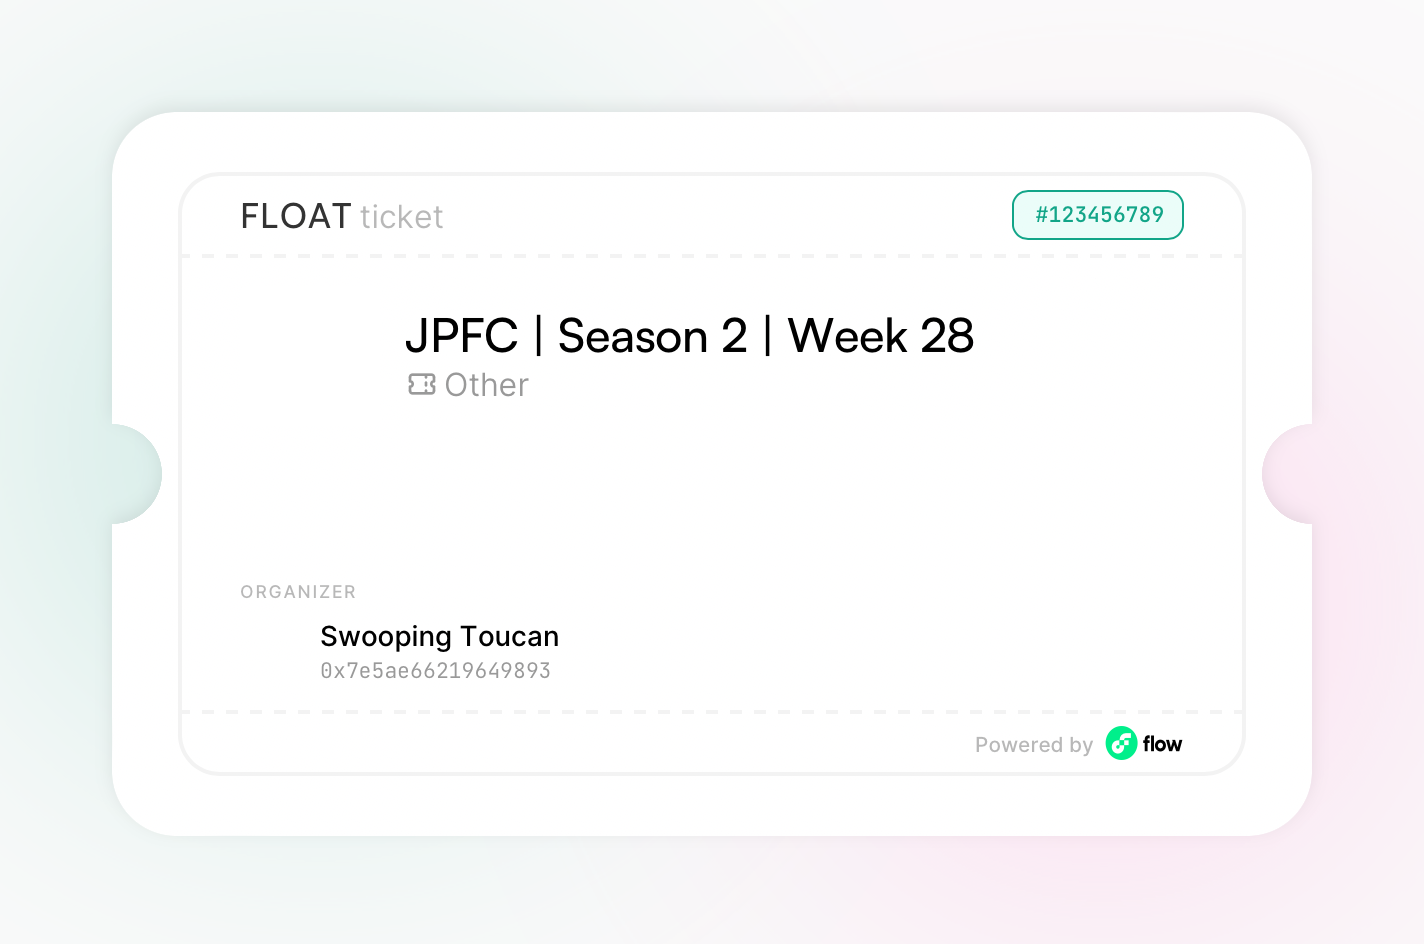 JPFC | Season 2 | Week 28 asset